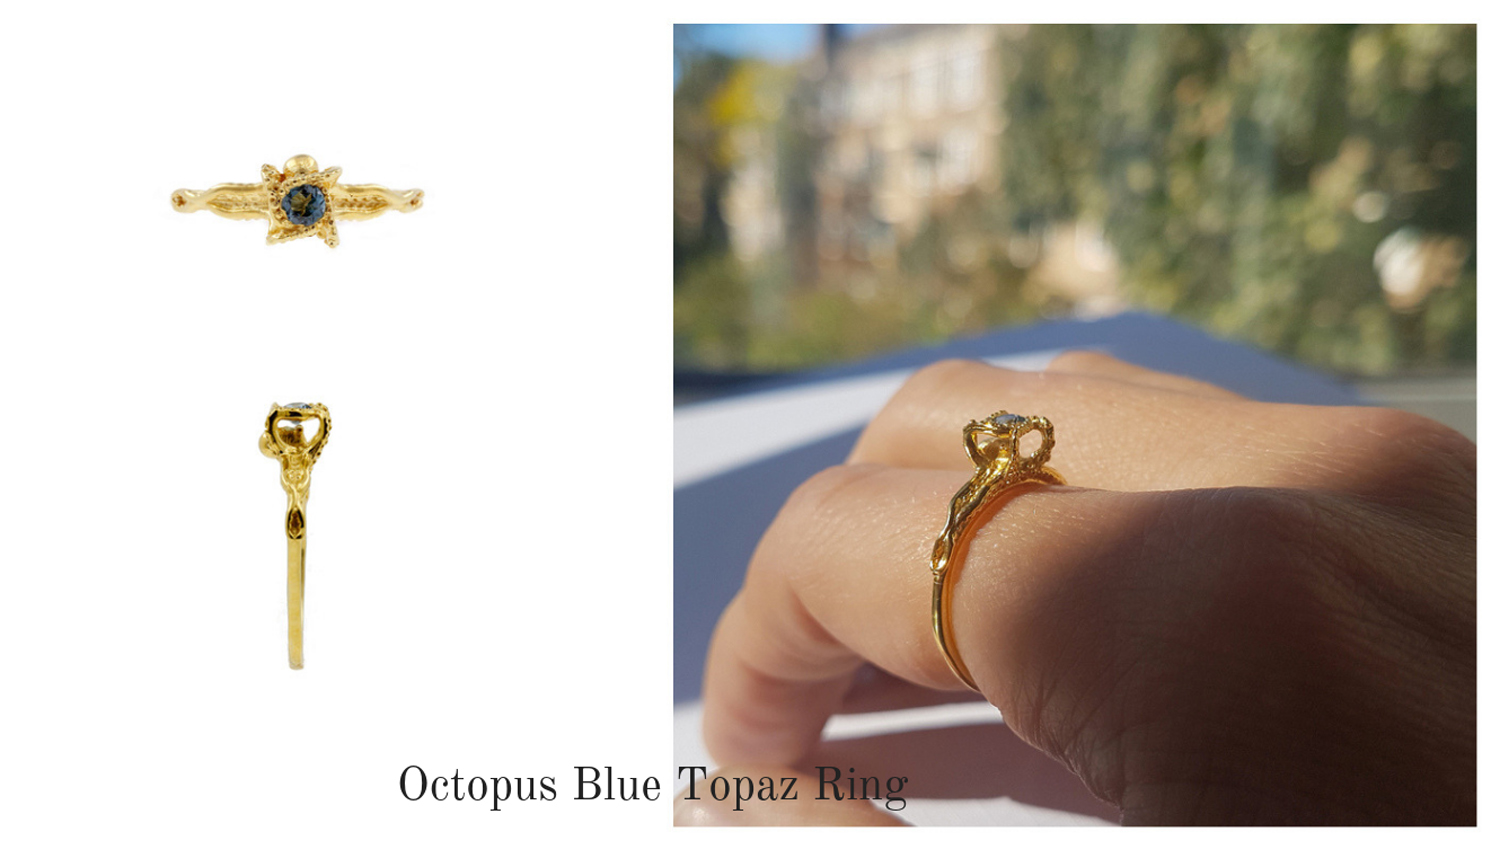 Octopus Blue Topaz Ring.jpg